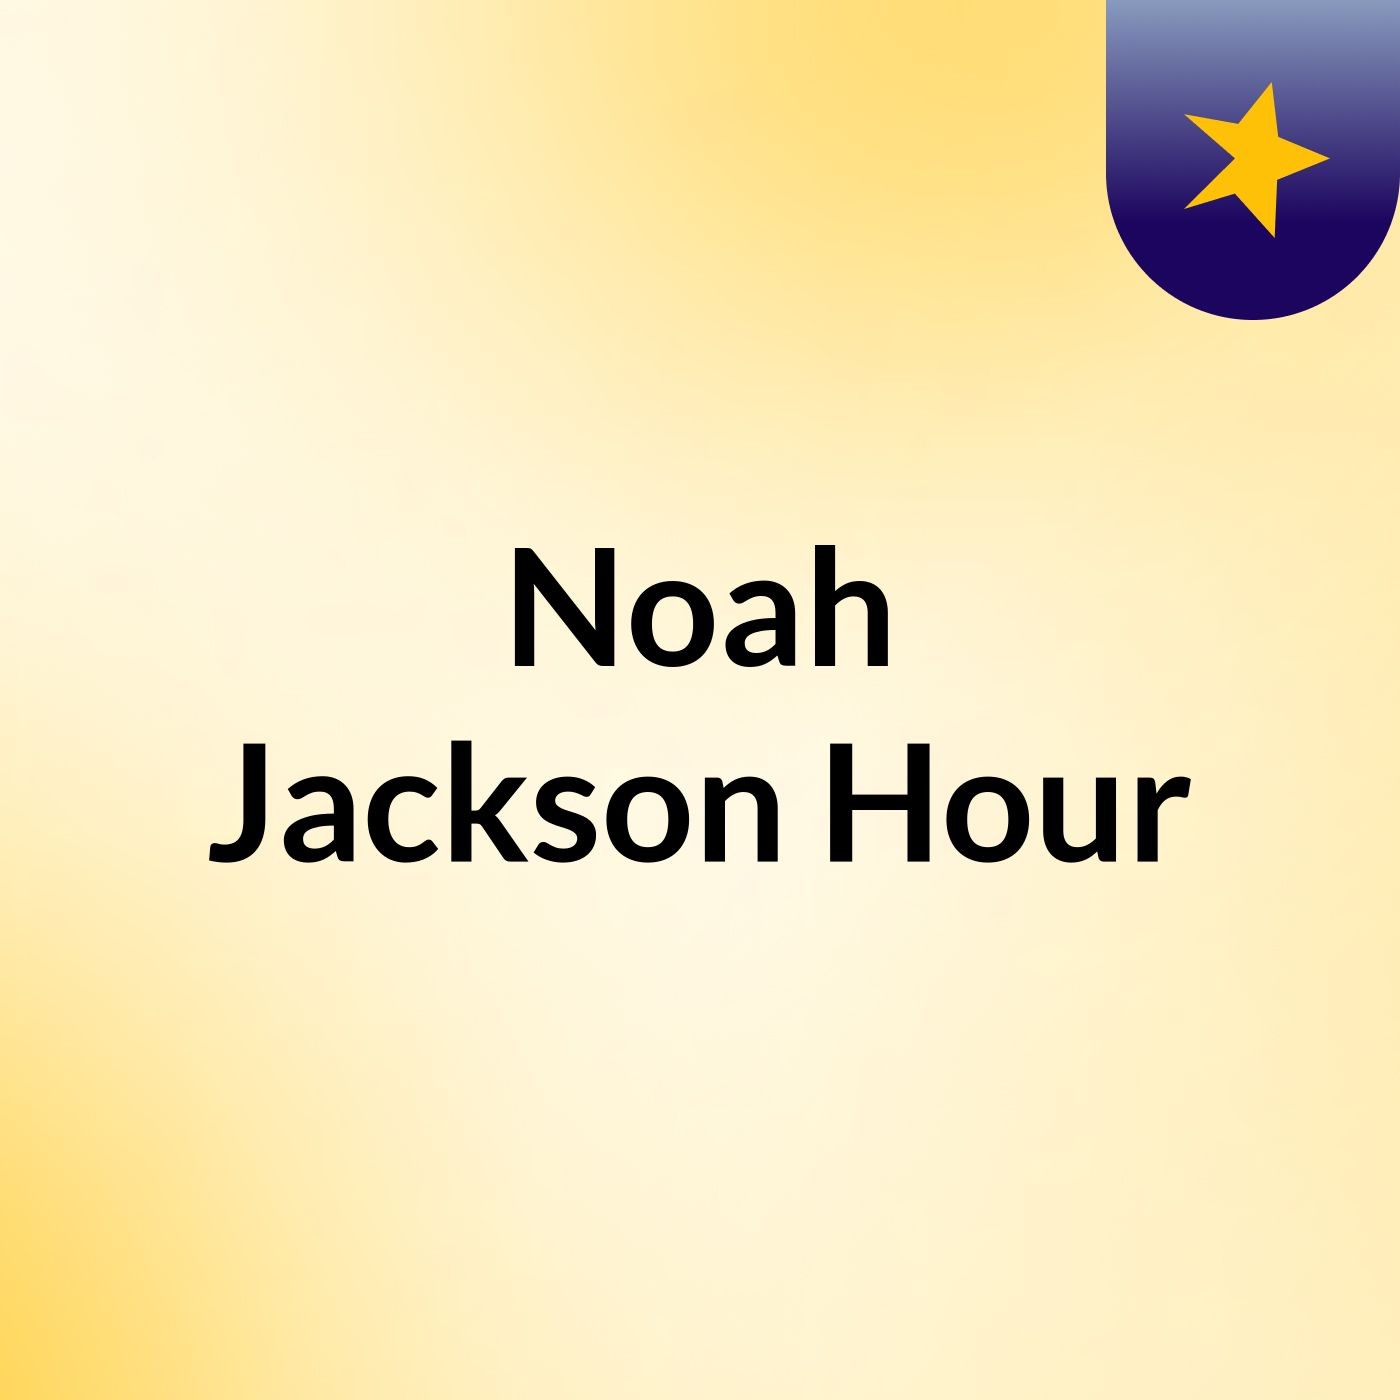 Noah Jackson Hour